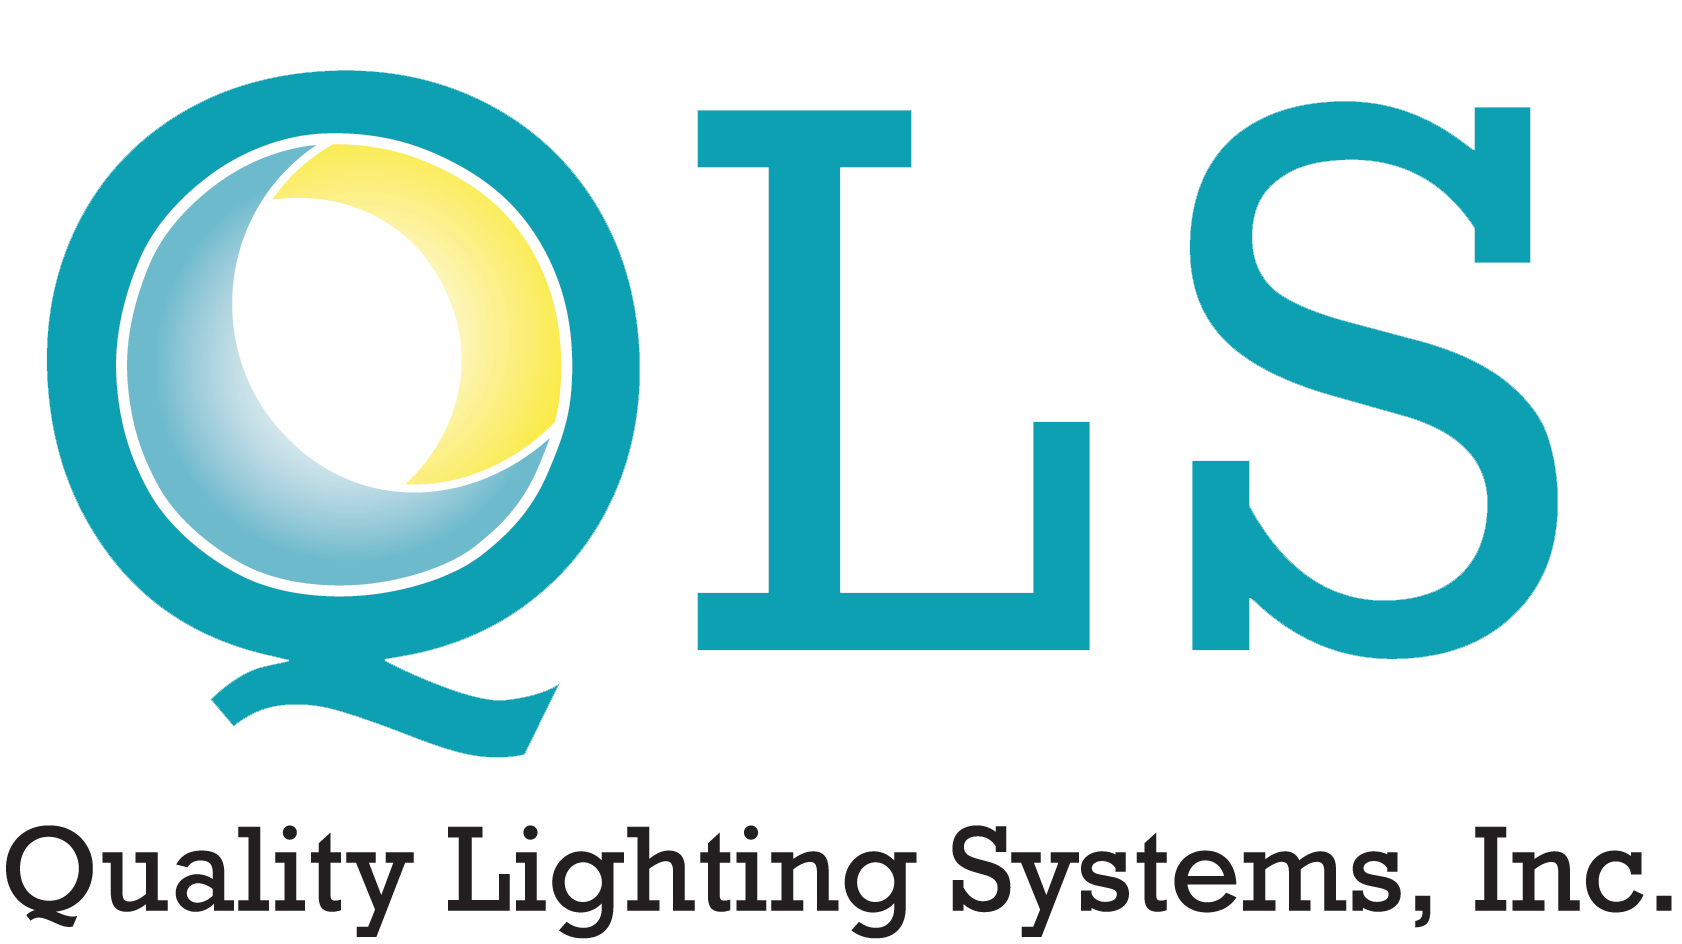 New QLS logo